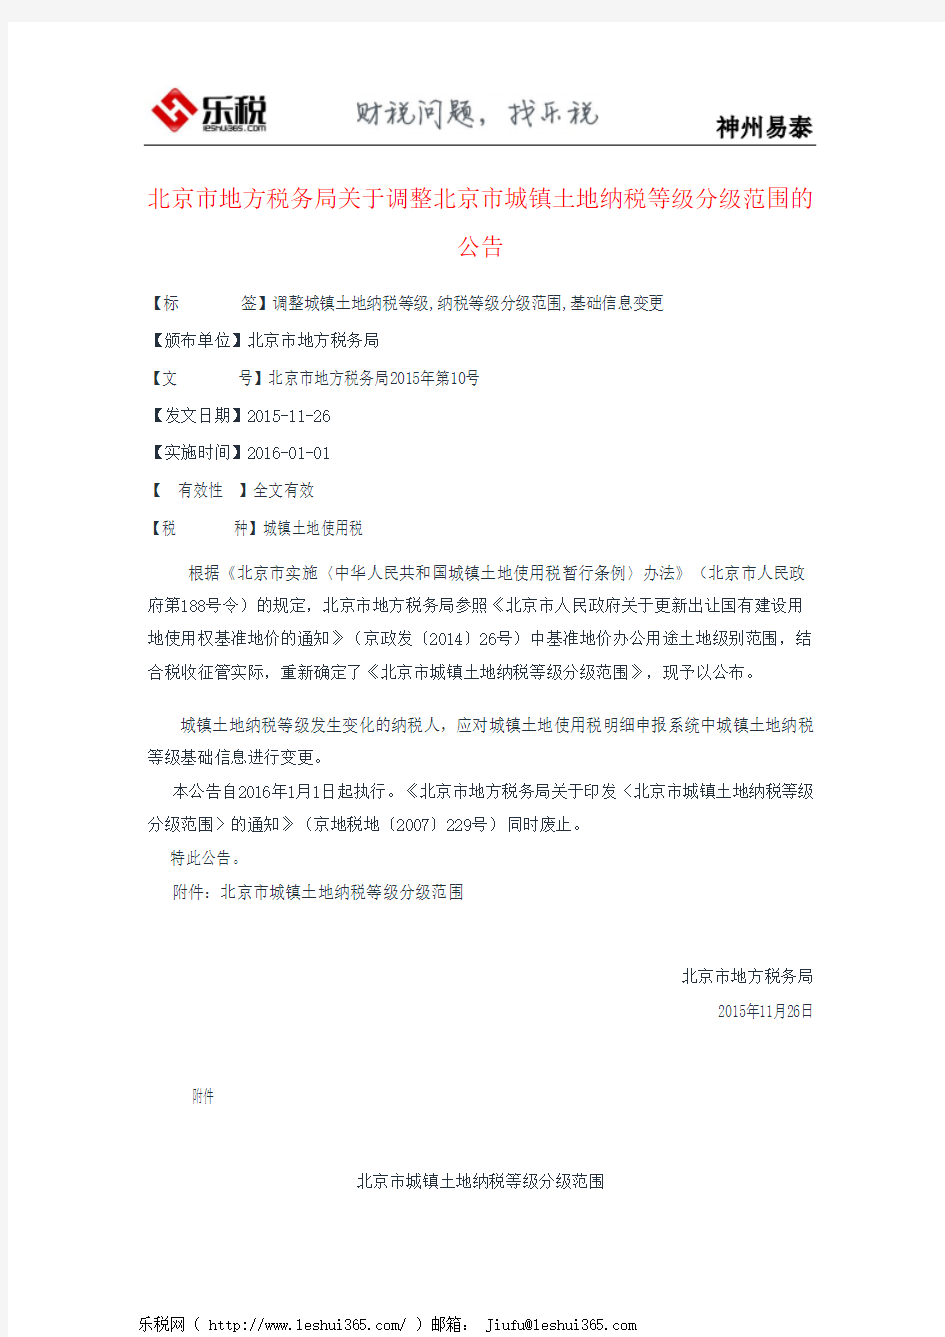 北京市地方税务局关于调整北京市城镇土地纳税等级分级范围的公告